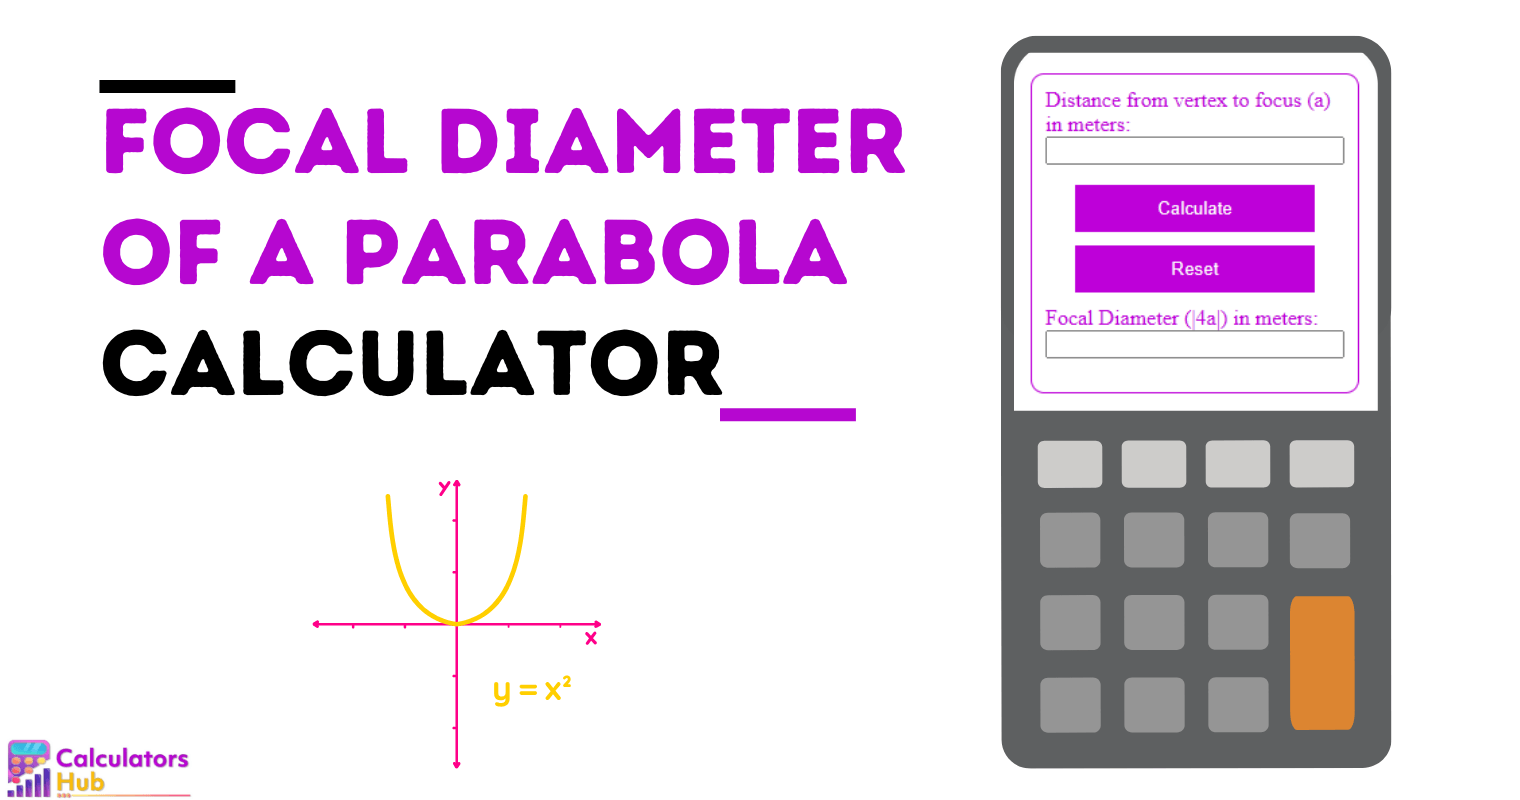 Calculadora de diâmetro focal de uma parábola